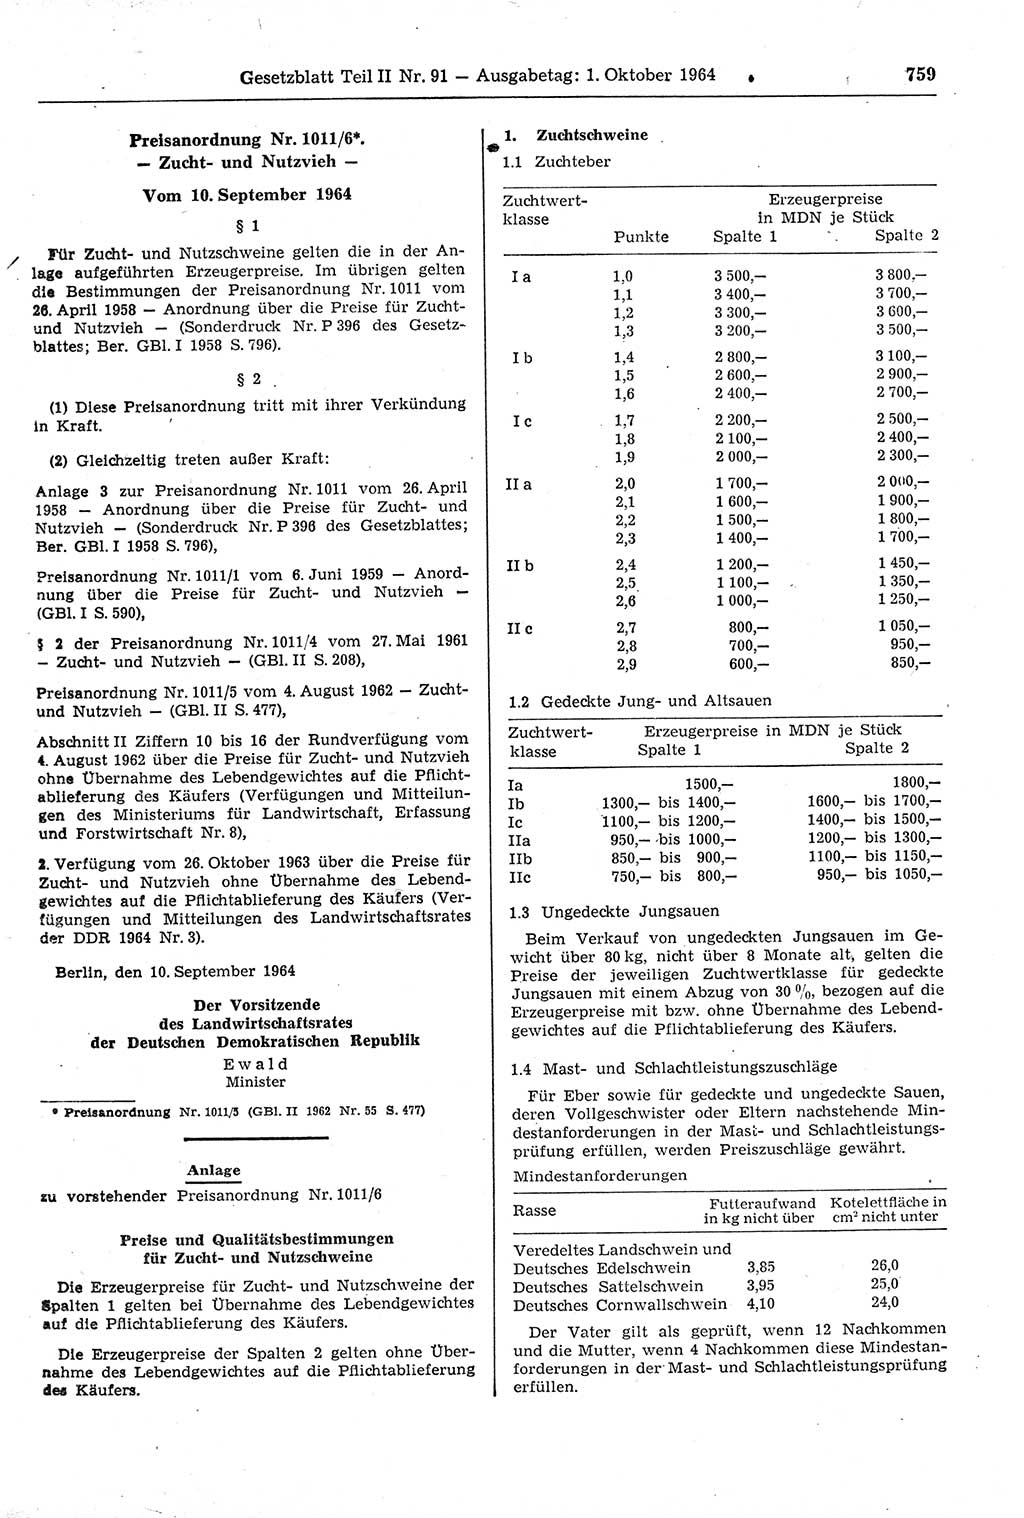 Gesetzblatt (GBl.) der Deutschen Demokratischen Republik (DDR) Teil ⅠⅠ 1964, Seite 759 (GBl. DDR ⅠⅠ 1964, S. 759)